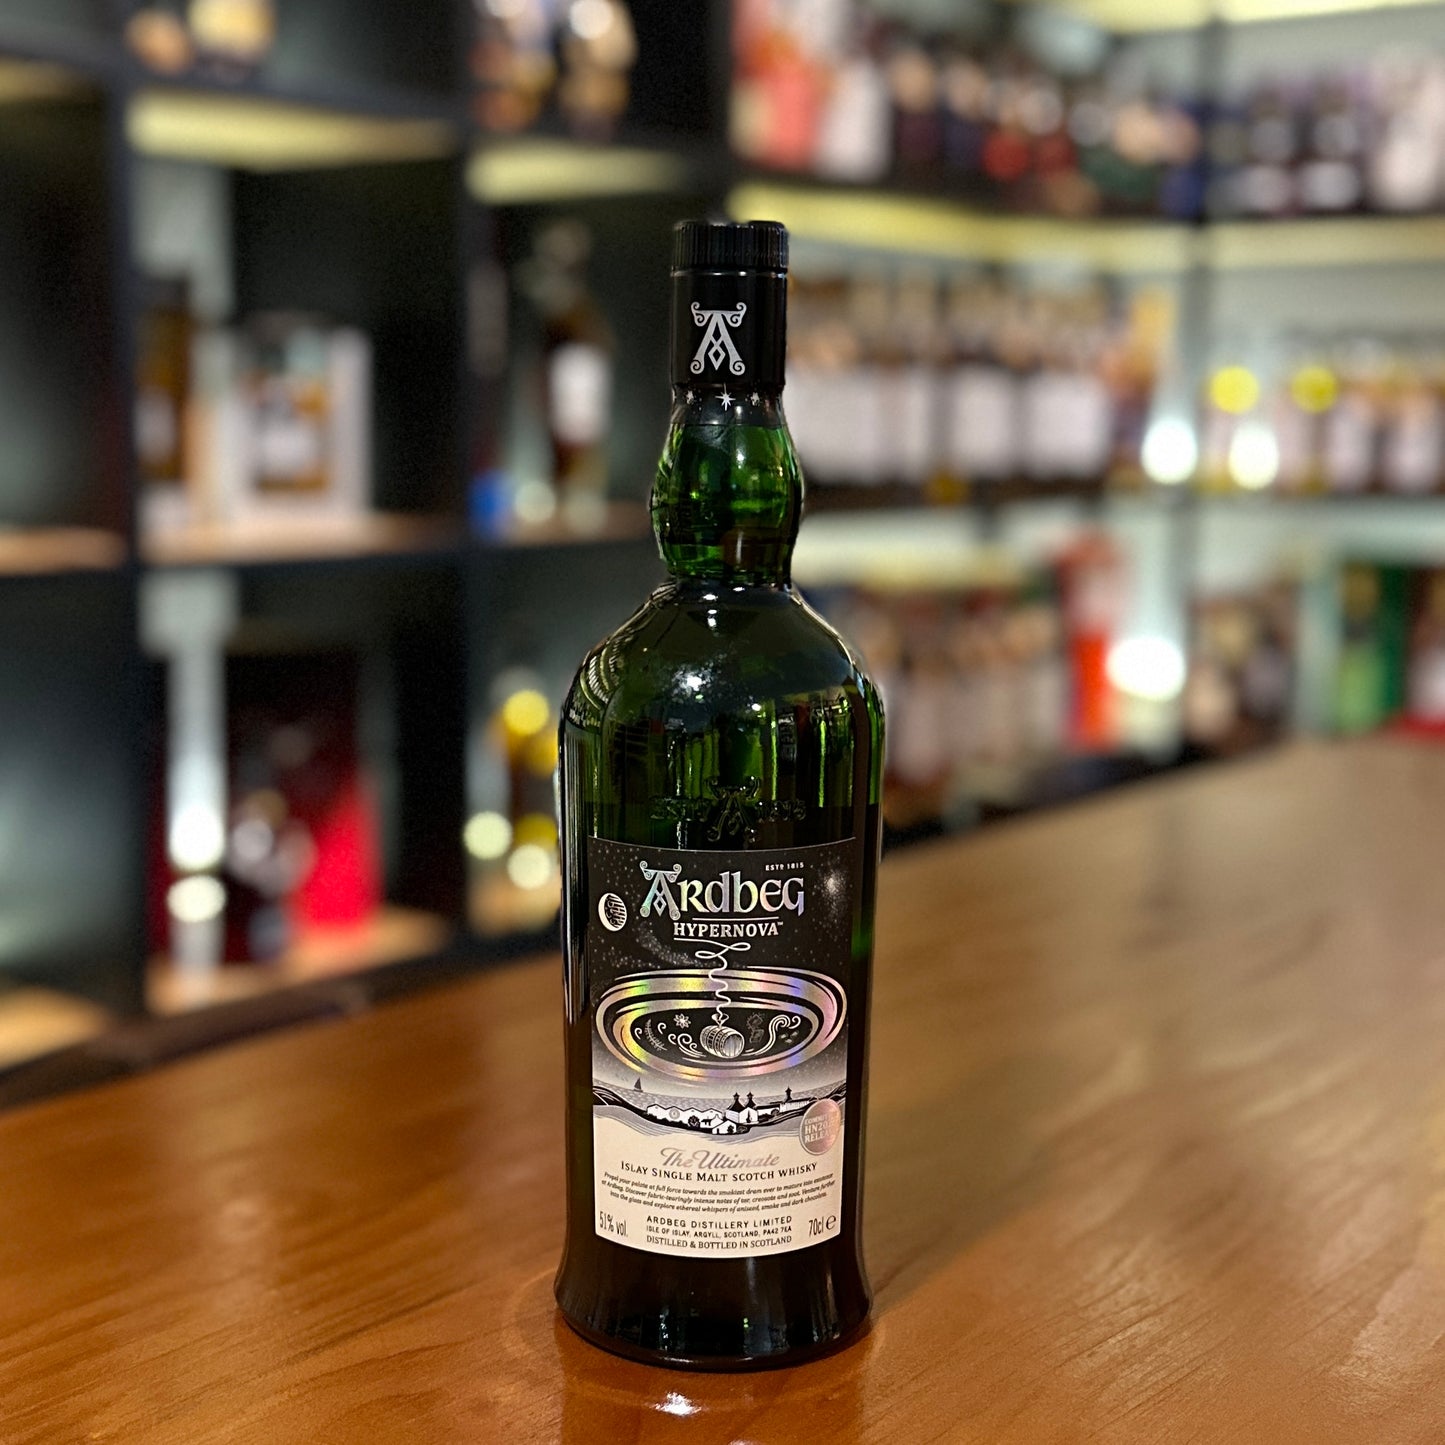 Ardbeg Hypernova Single Malt Scotch Whisky (French Edition)